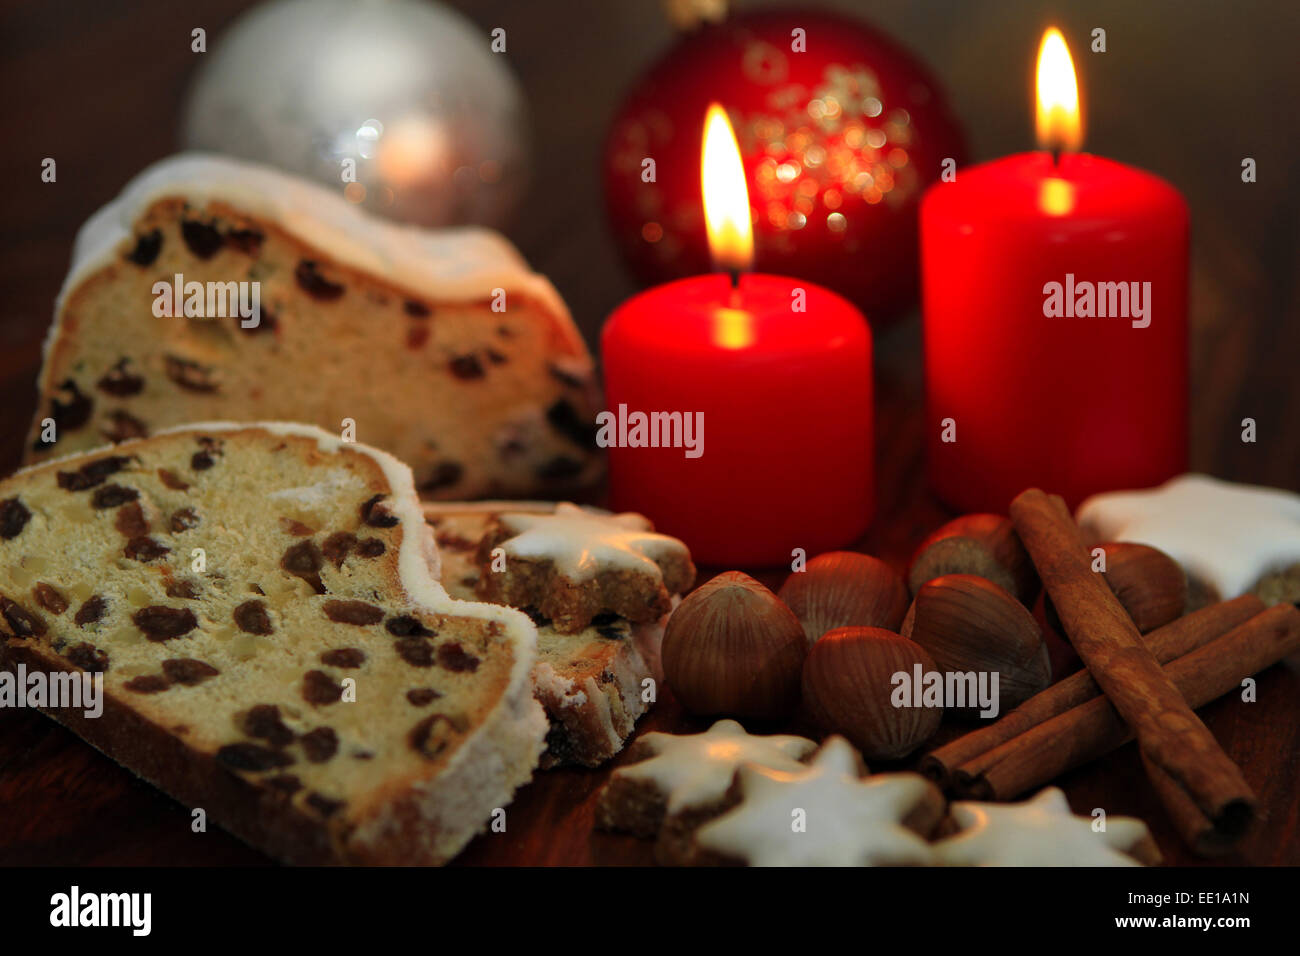 Weihnachtsgebäck, Christstollen und Zimtsterne Stock Photo